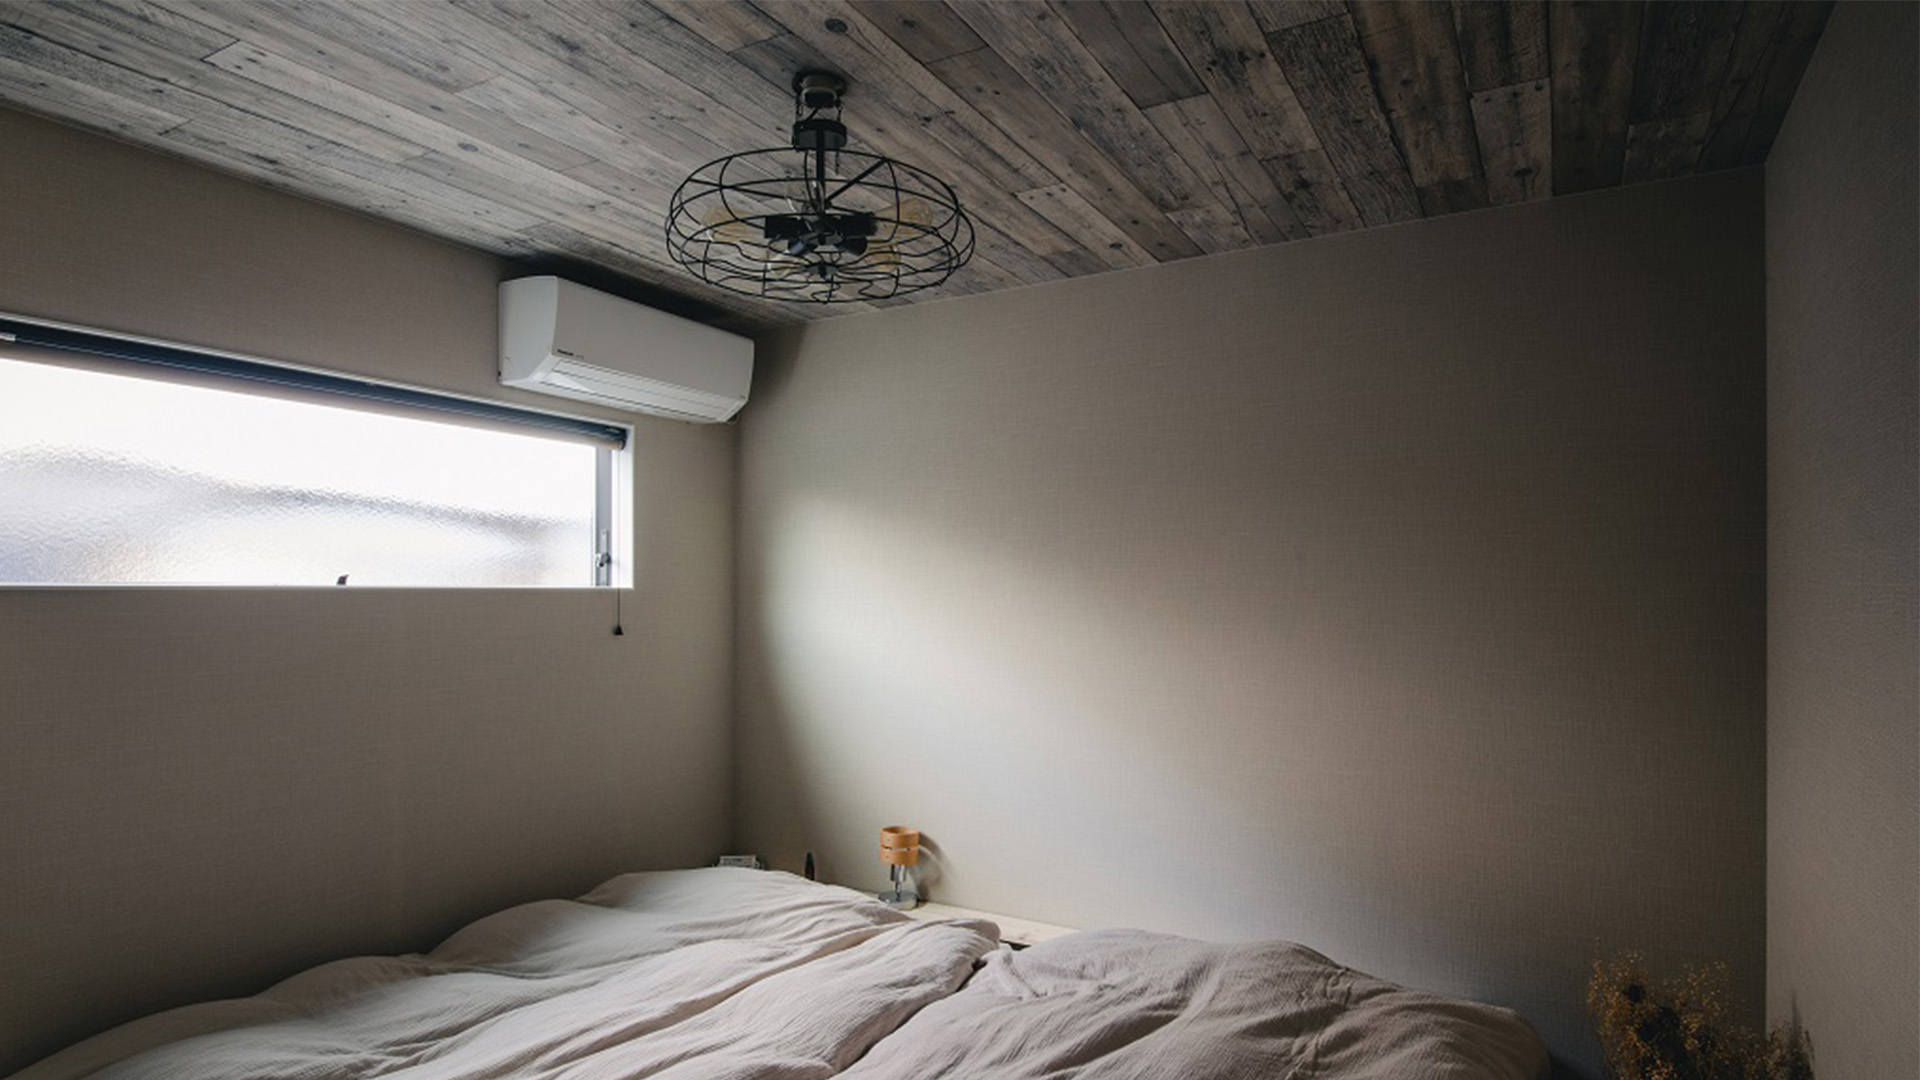 インダストリアルな雰囲気でアイアンの扇風機がワンポイントとなっている寝室の画像。